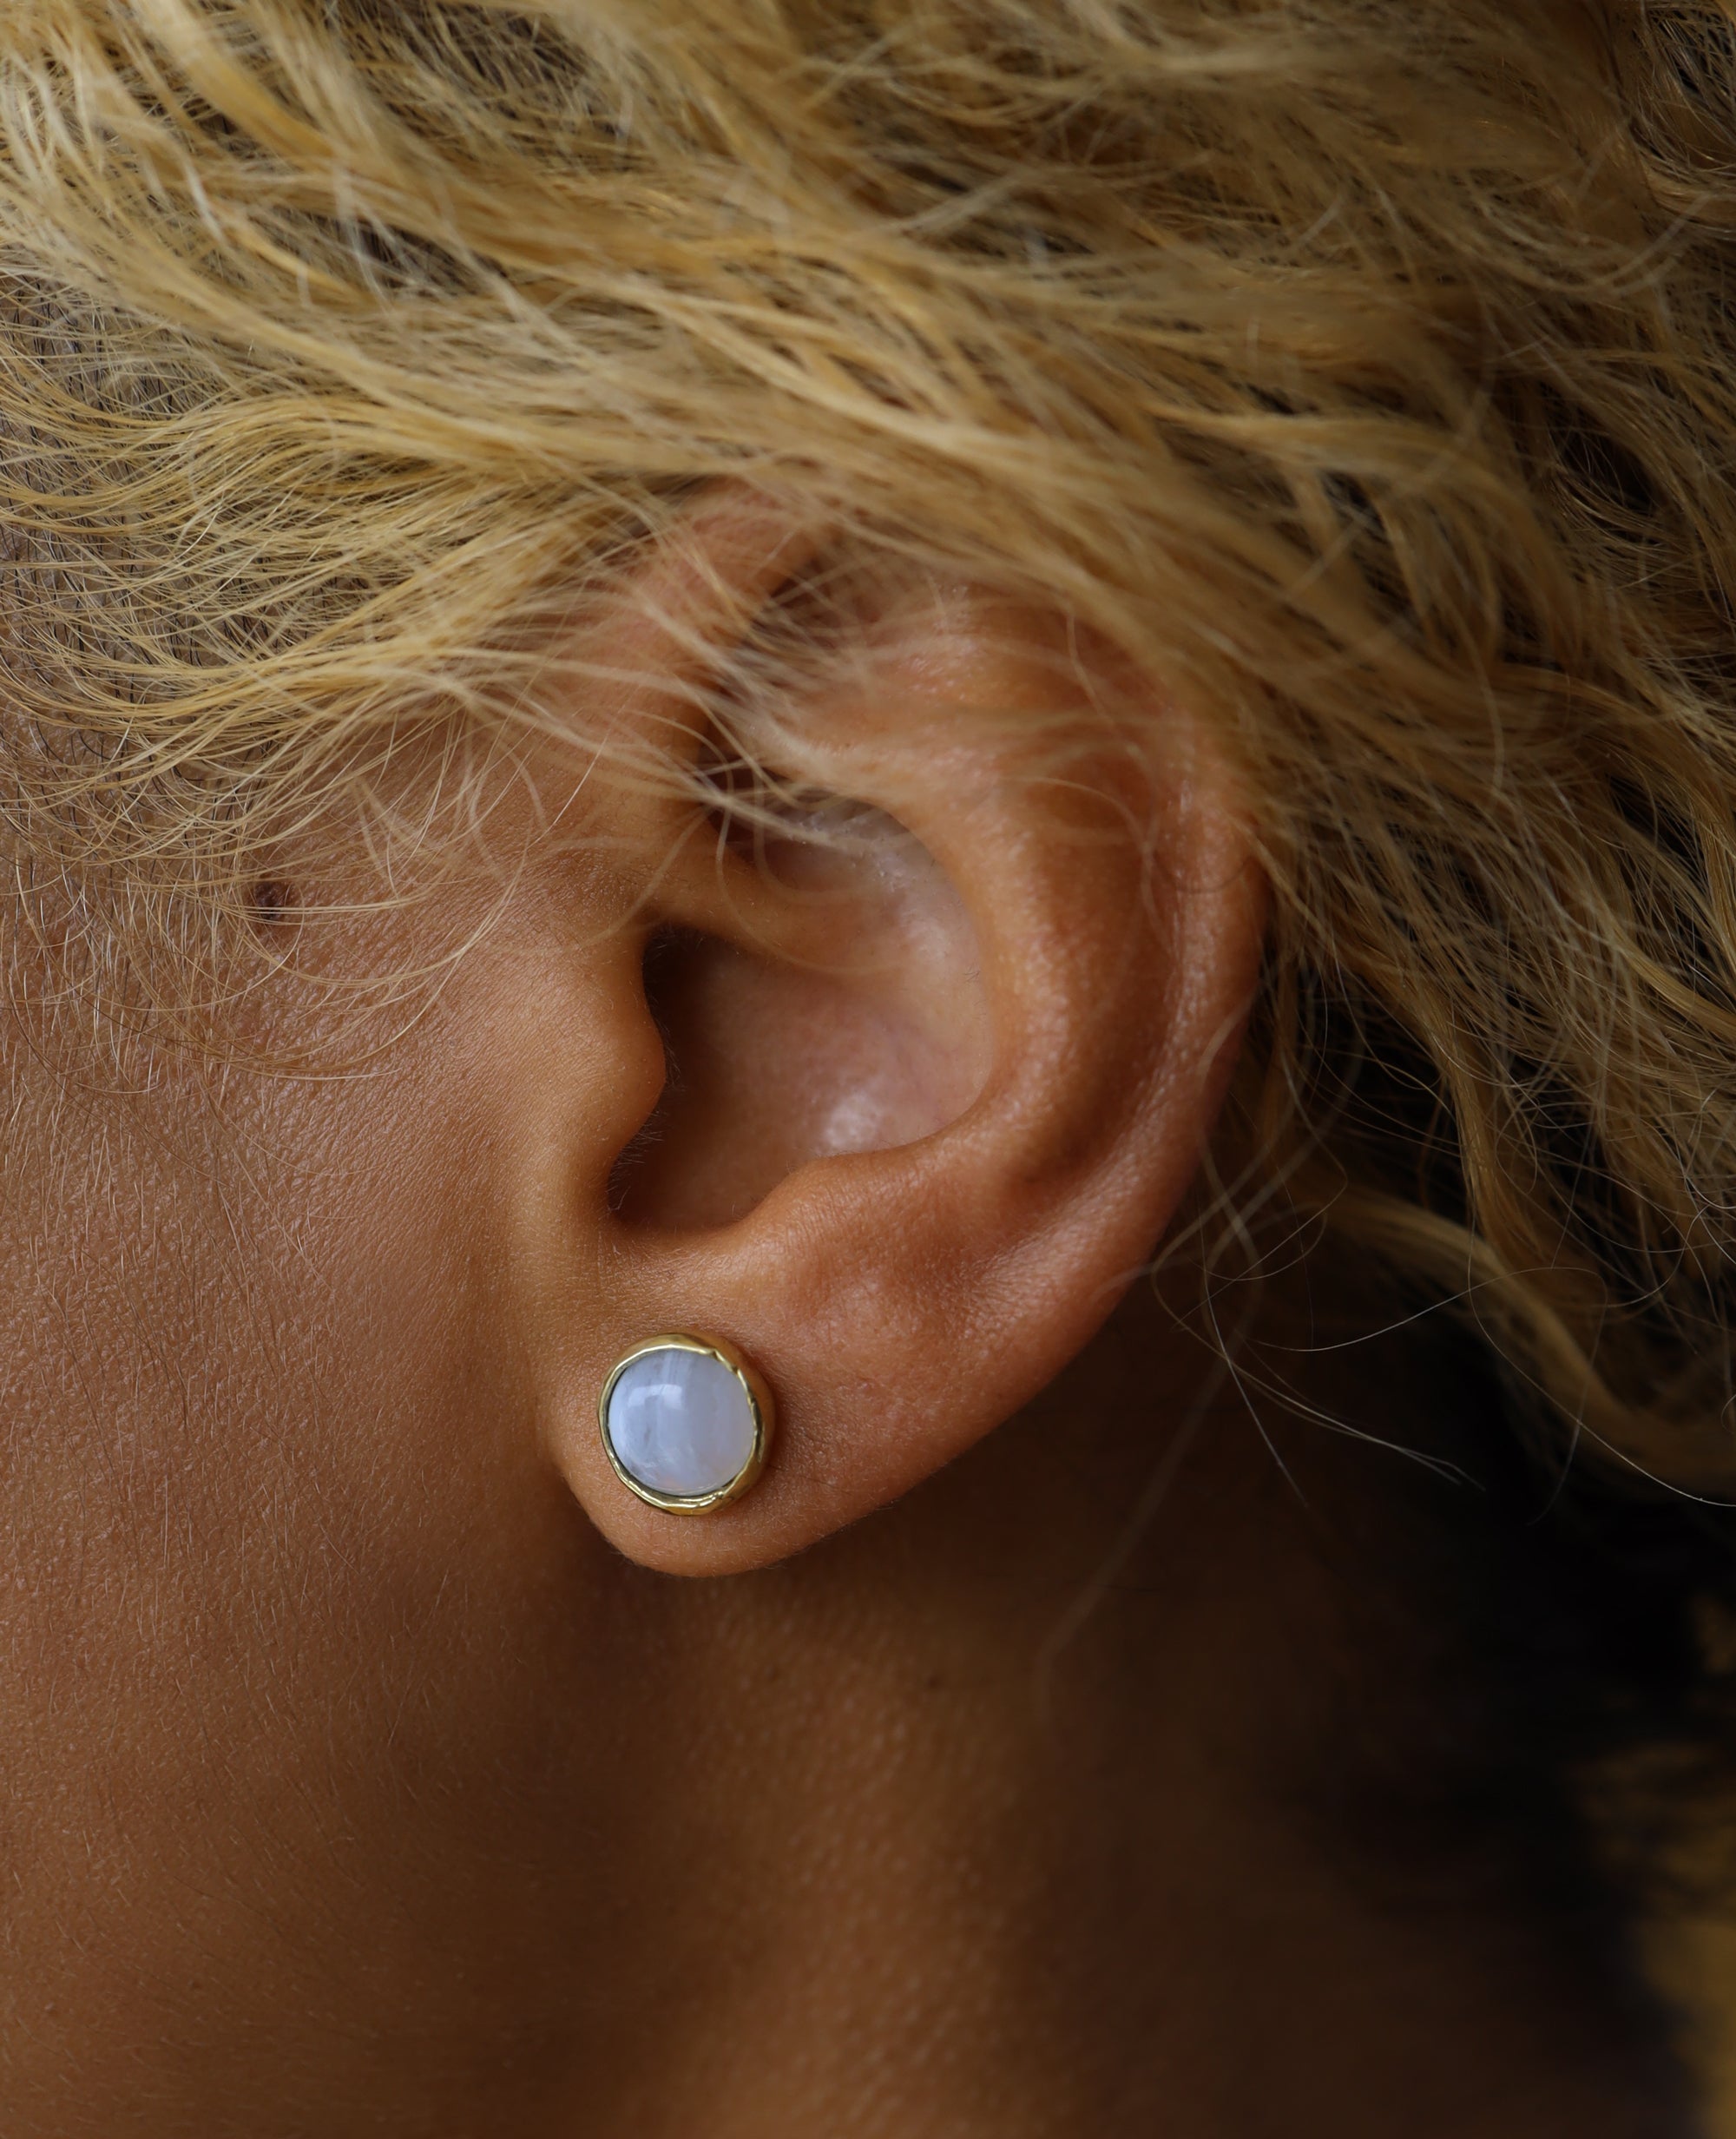 MAGNOLIA STUD // boucles d'oreilles en or - ORA-C jewelry - bijoux faits à la main par Caroline Pham, designer indépendante basée à Montréal